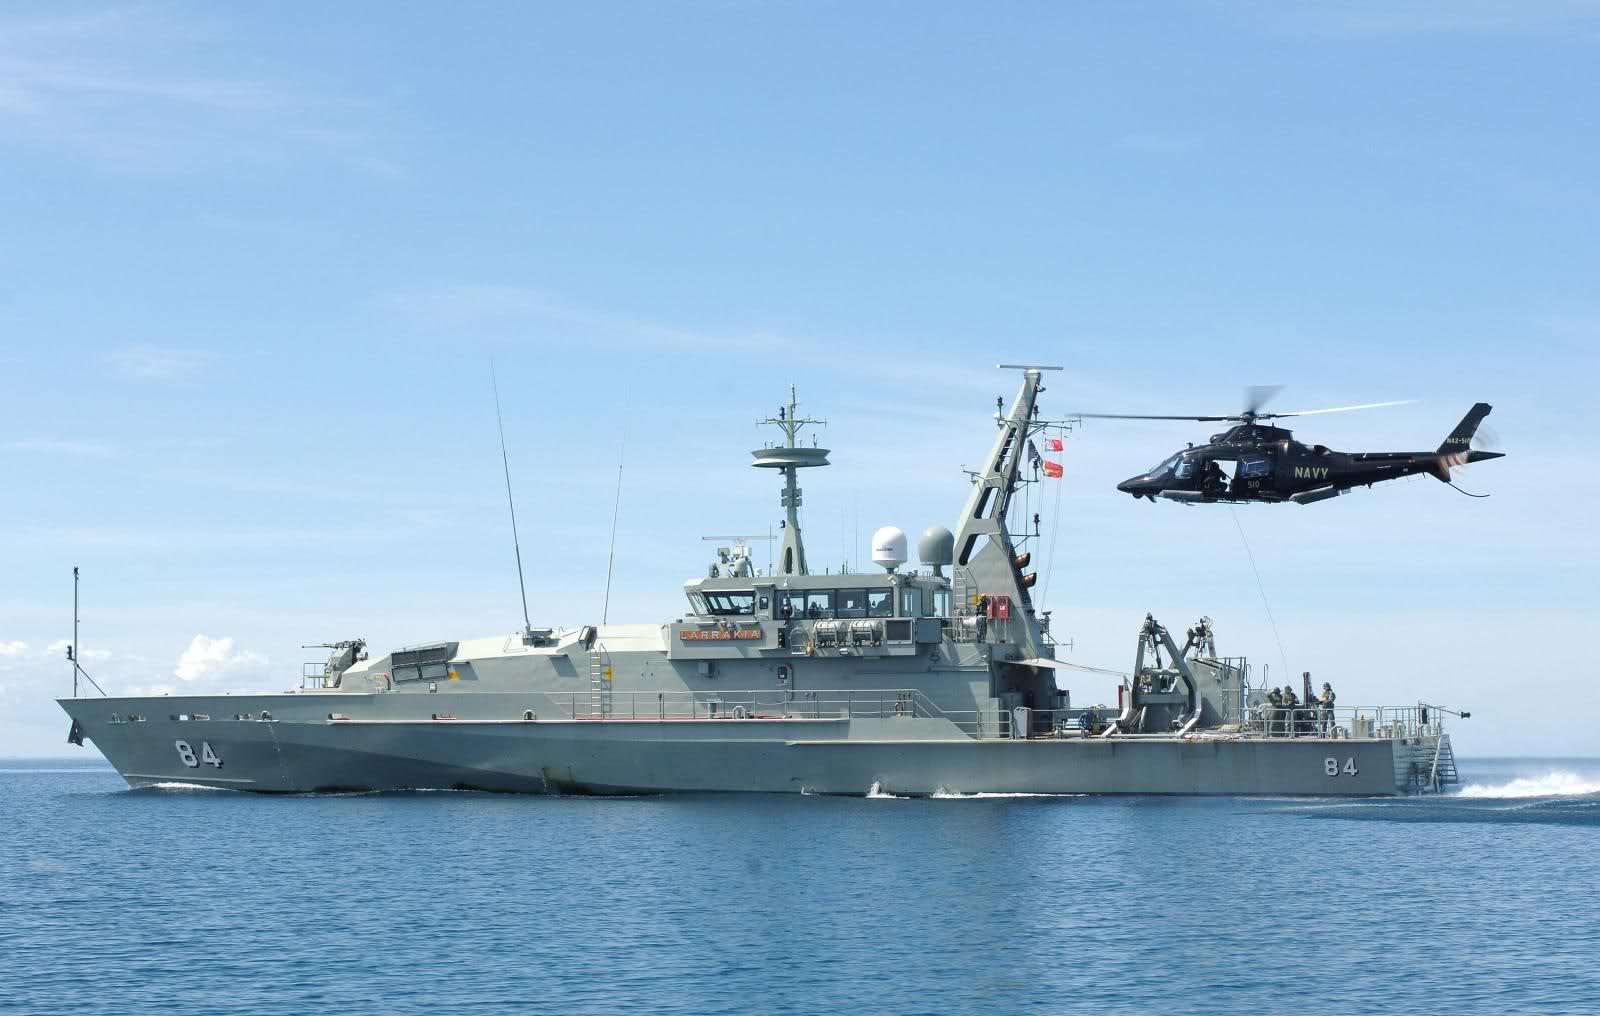 HMAS Larrakia (ACPB 84) #1